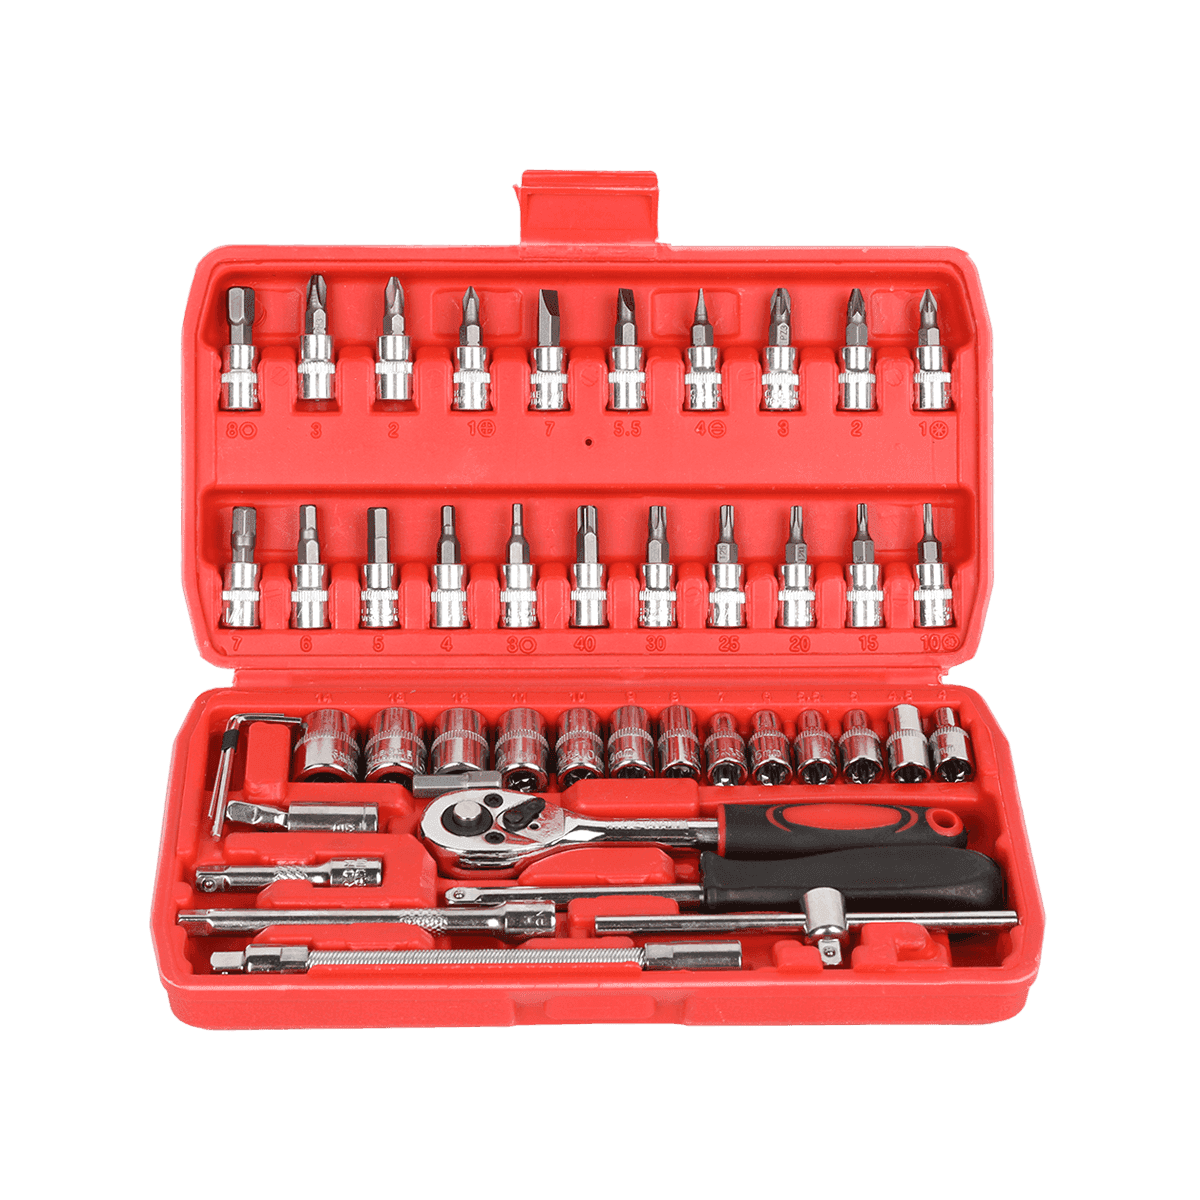 46 Uds 1/4 'dr Crv acero métrico reparación de automóviles caja de herramientas llave de vaso conjunto de herramientas con mango de trinquete